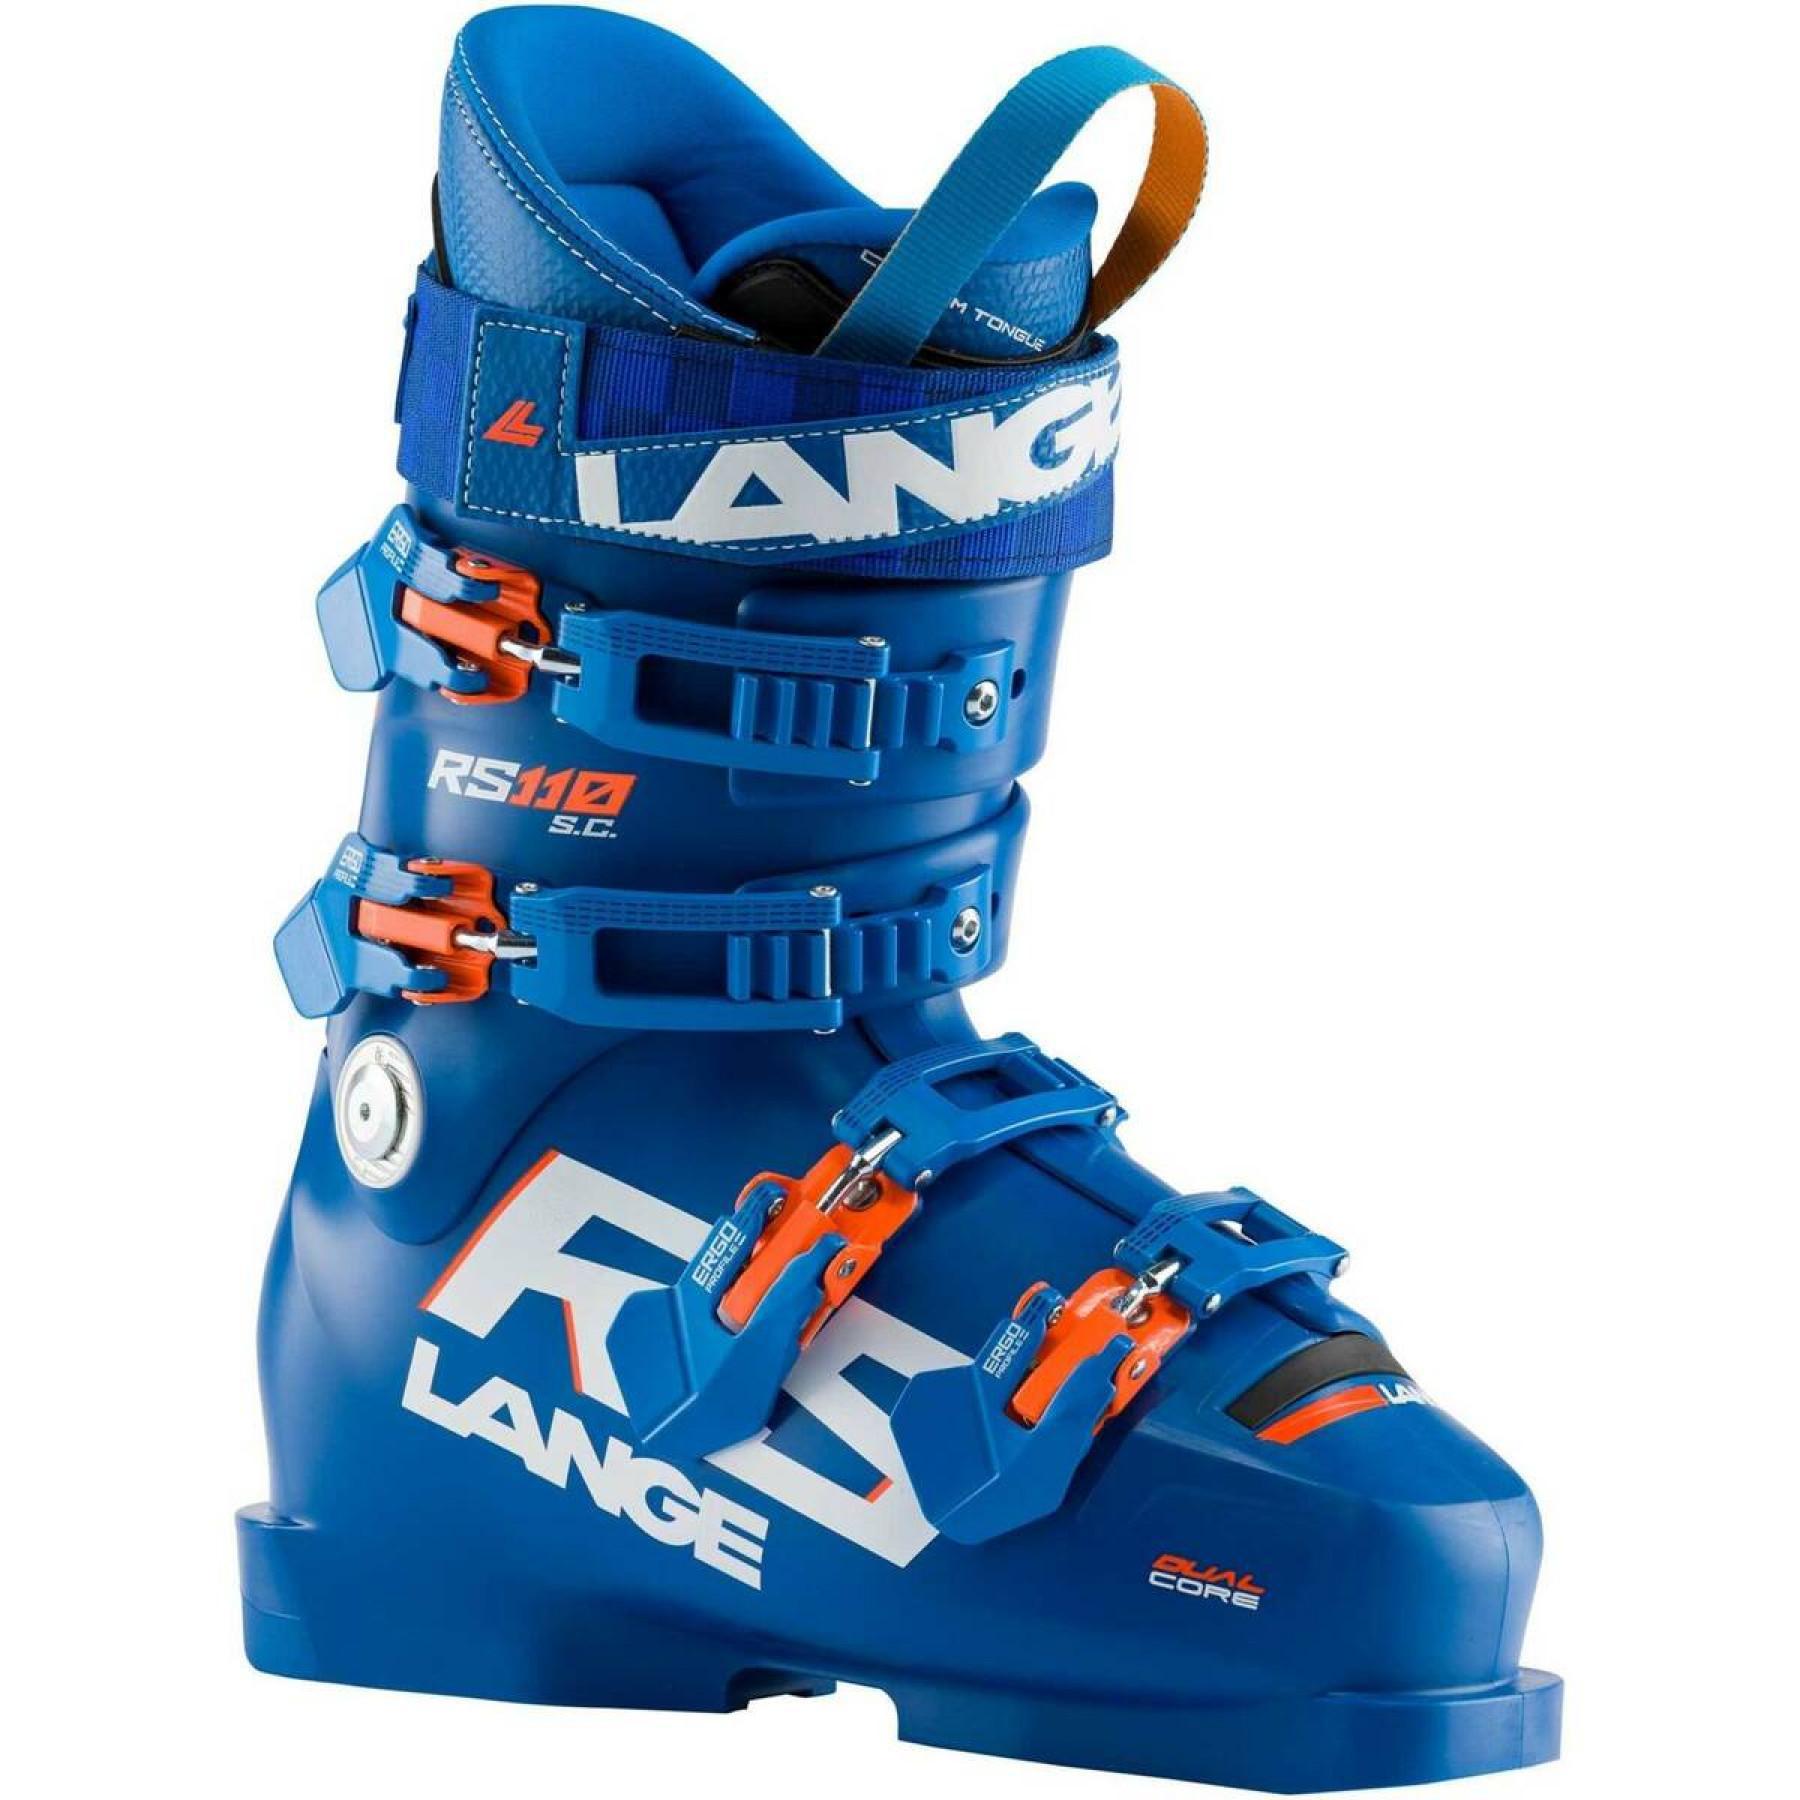 Botas de esqui para crianças Lange rs 110 s.c.